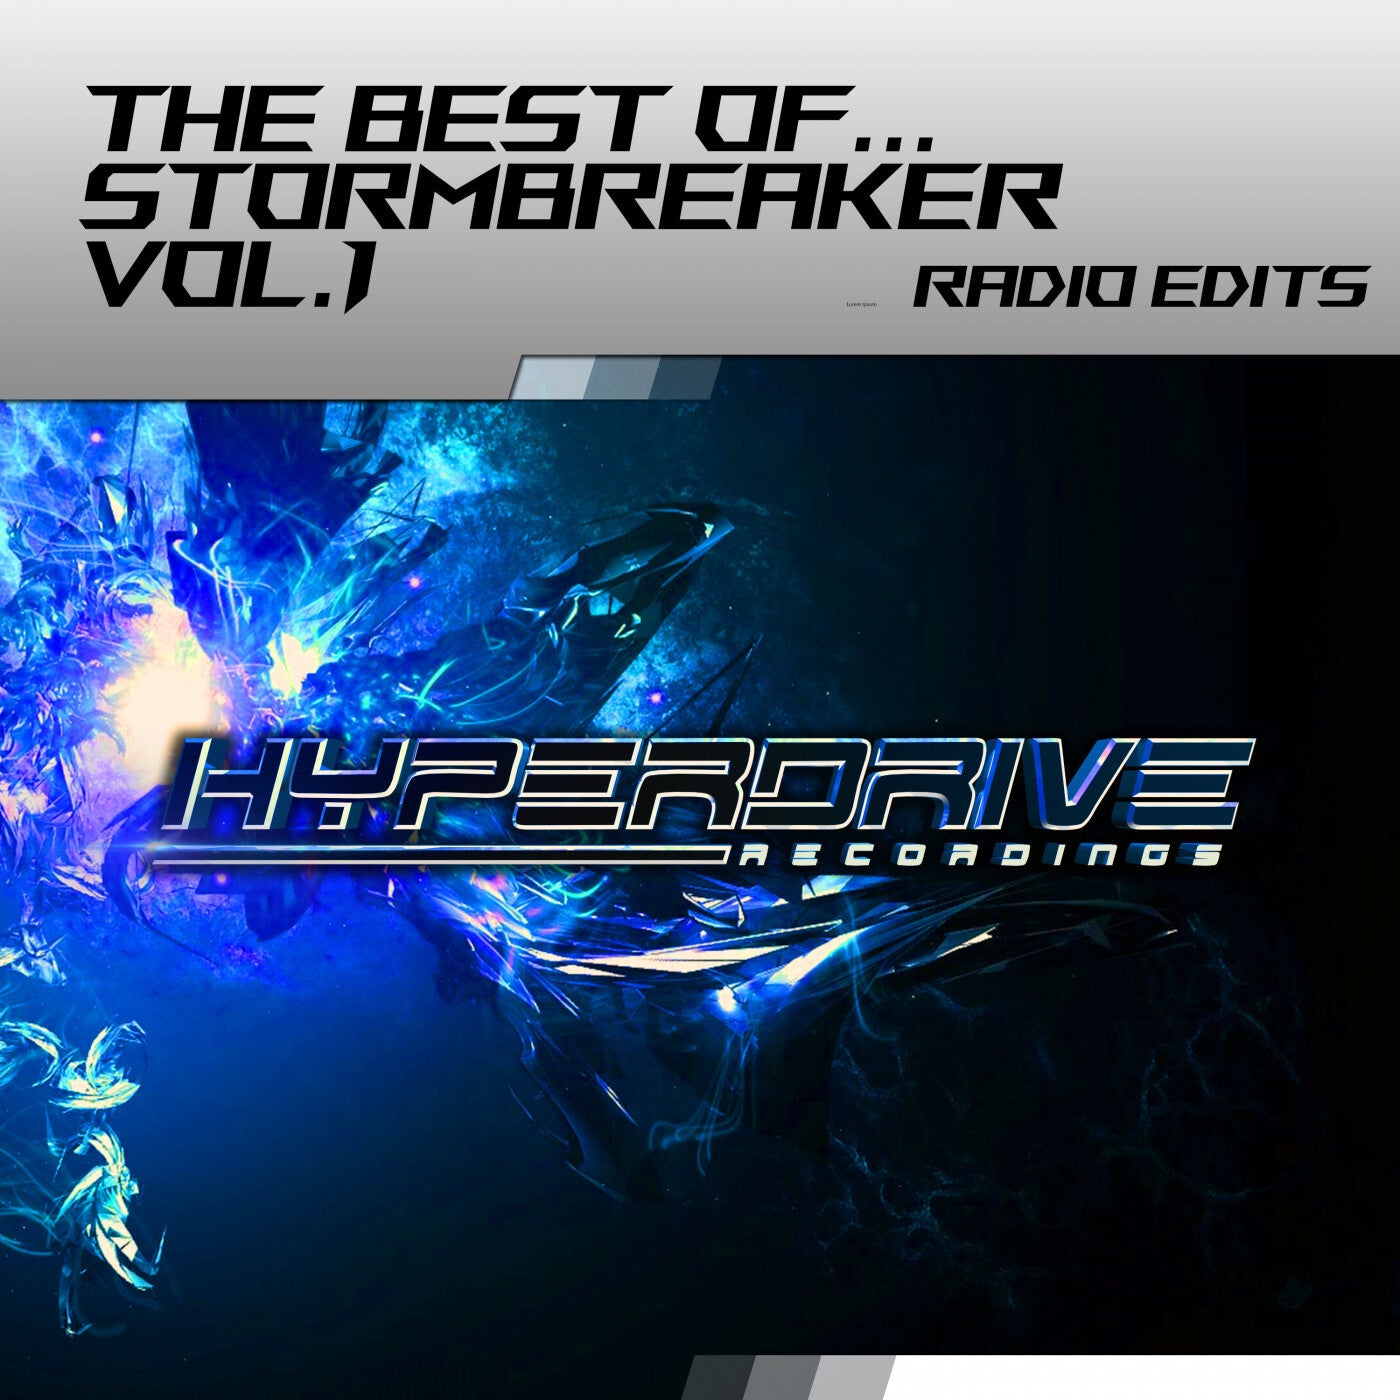 The Best Of Stormbreaker vol.1 (Radio Edits)